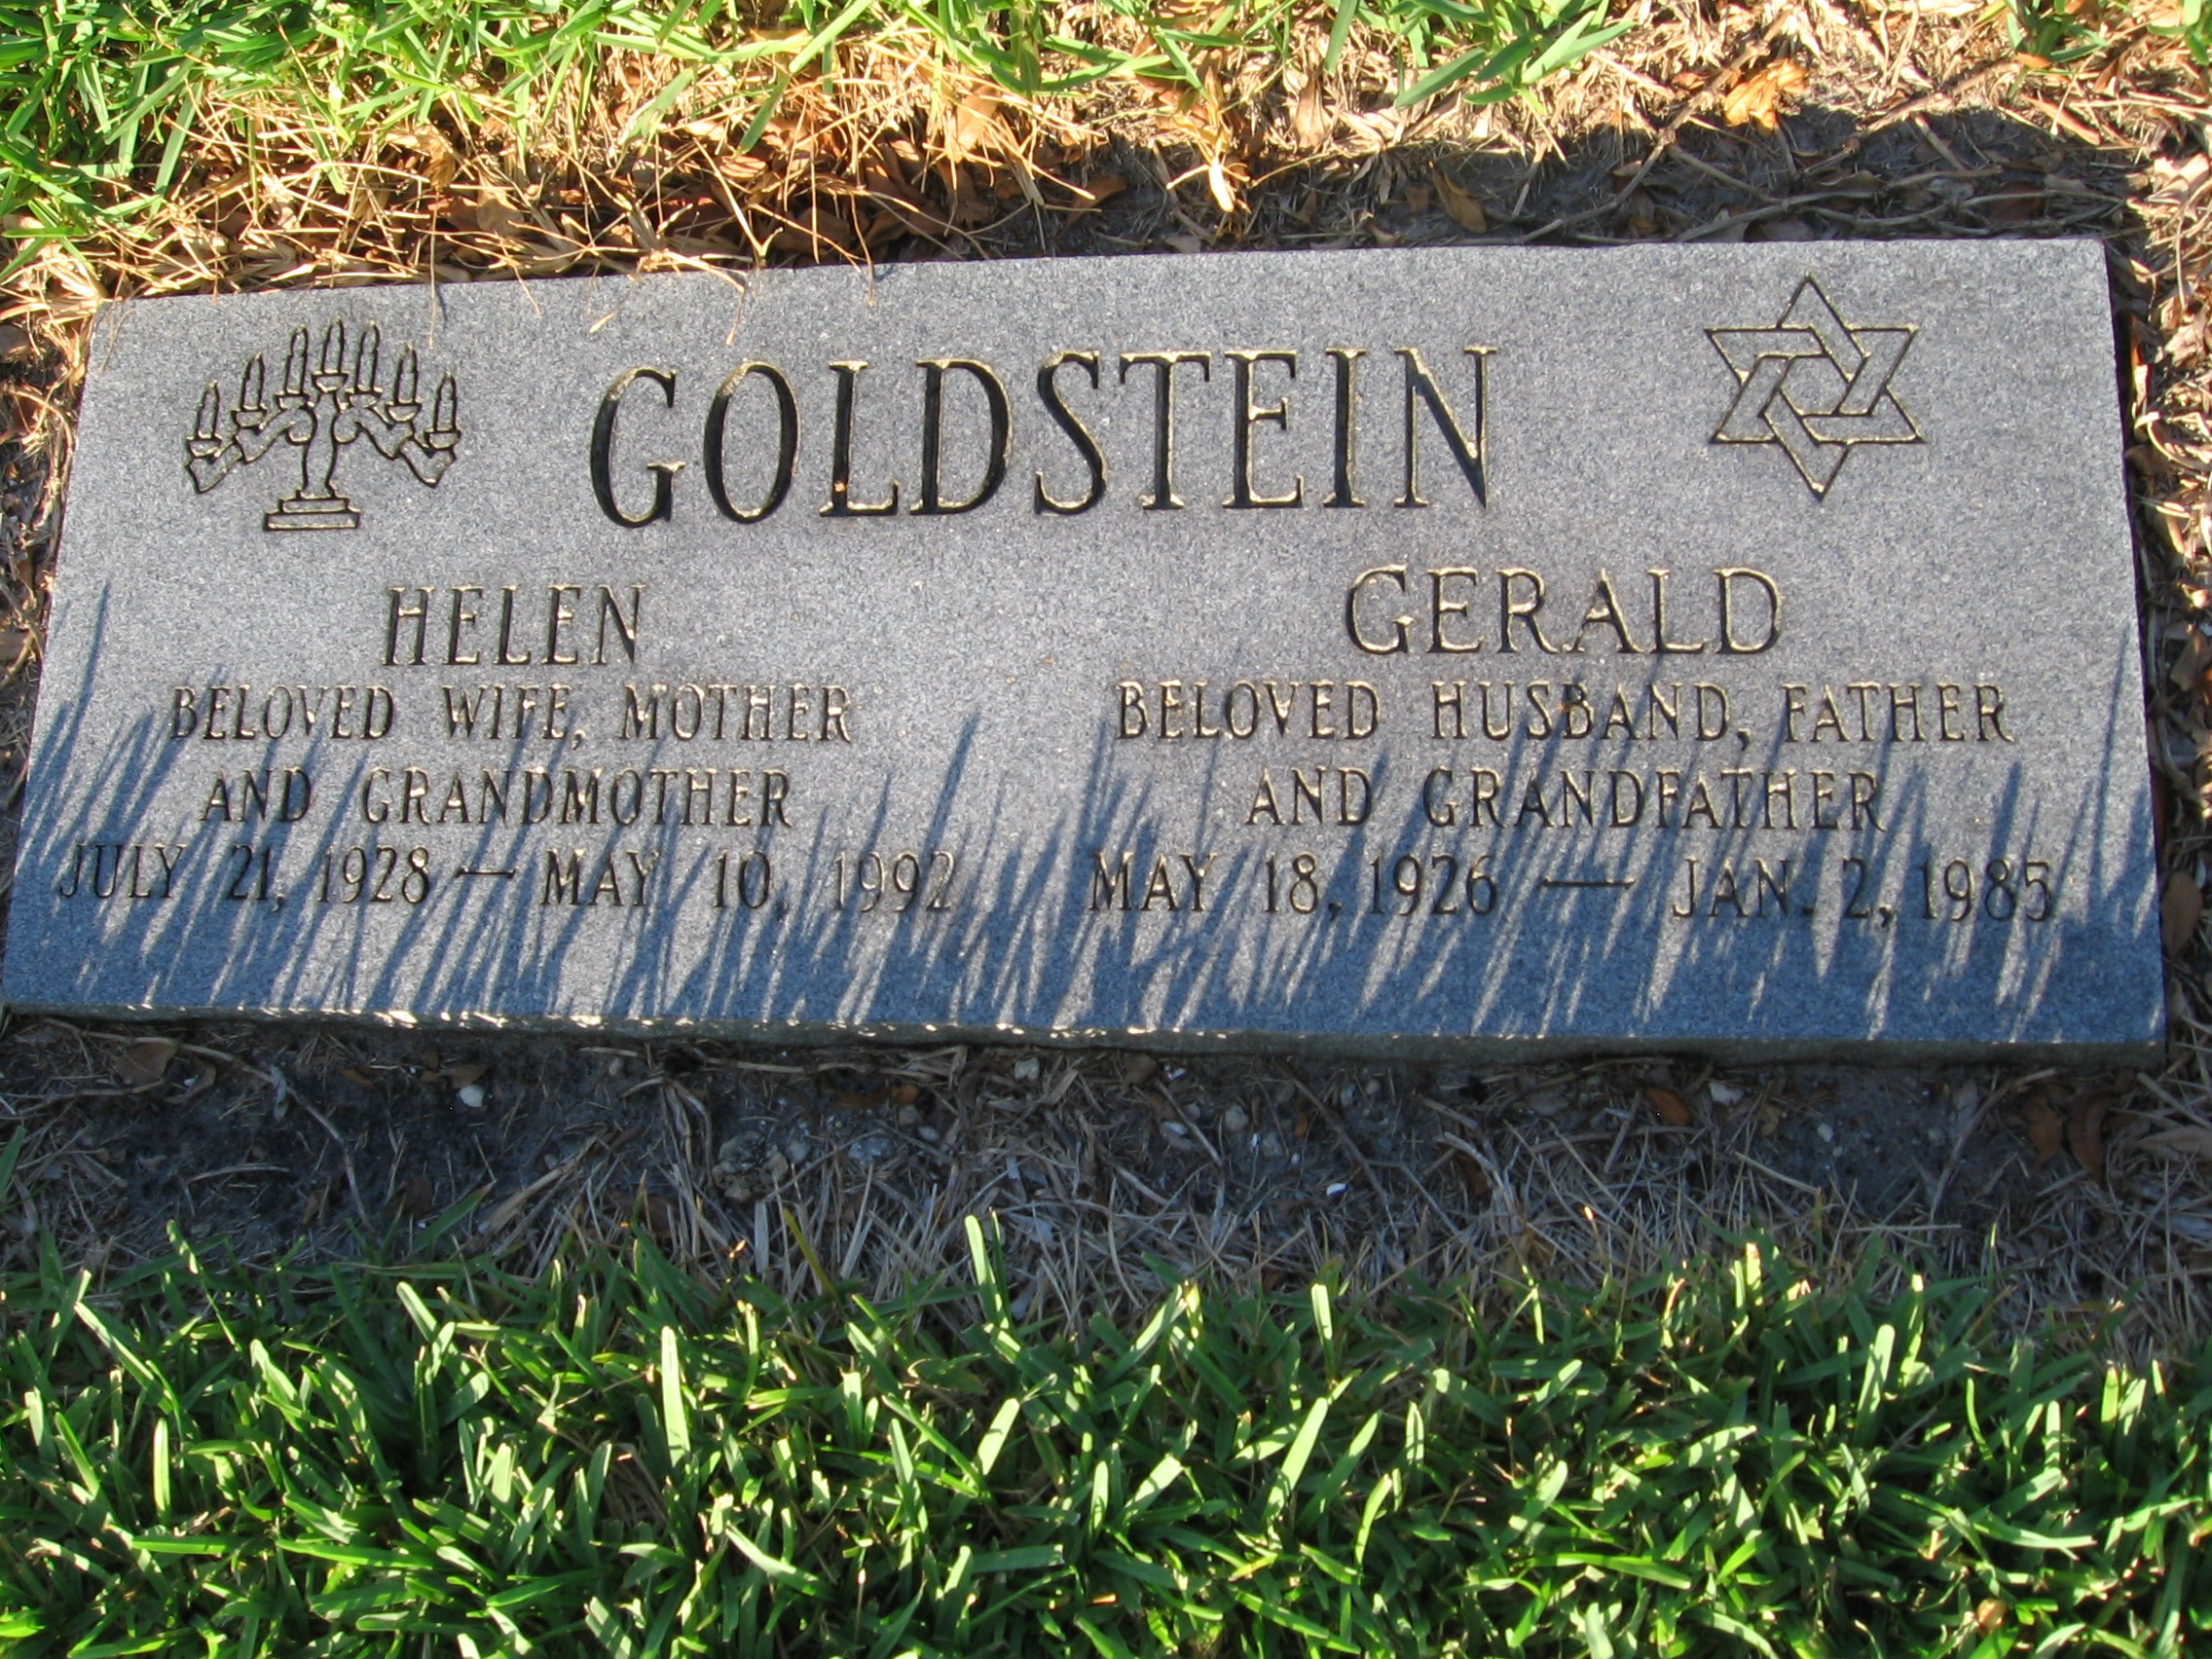 Helen Goldstein